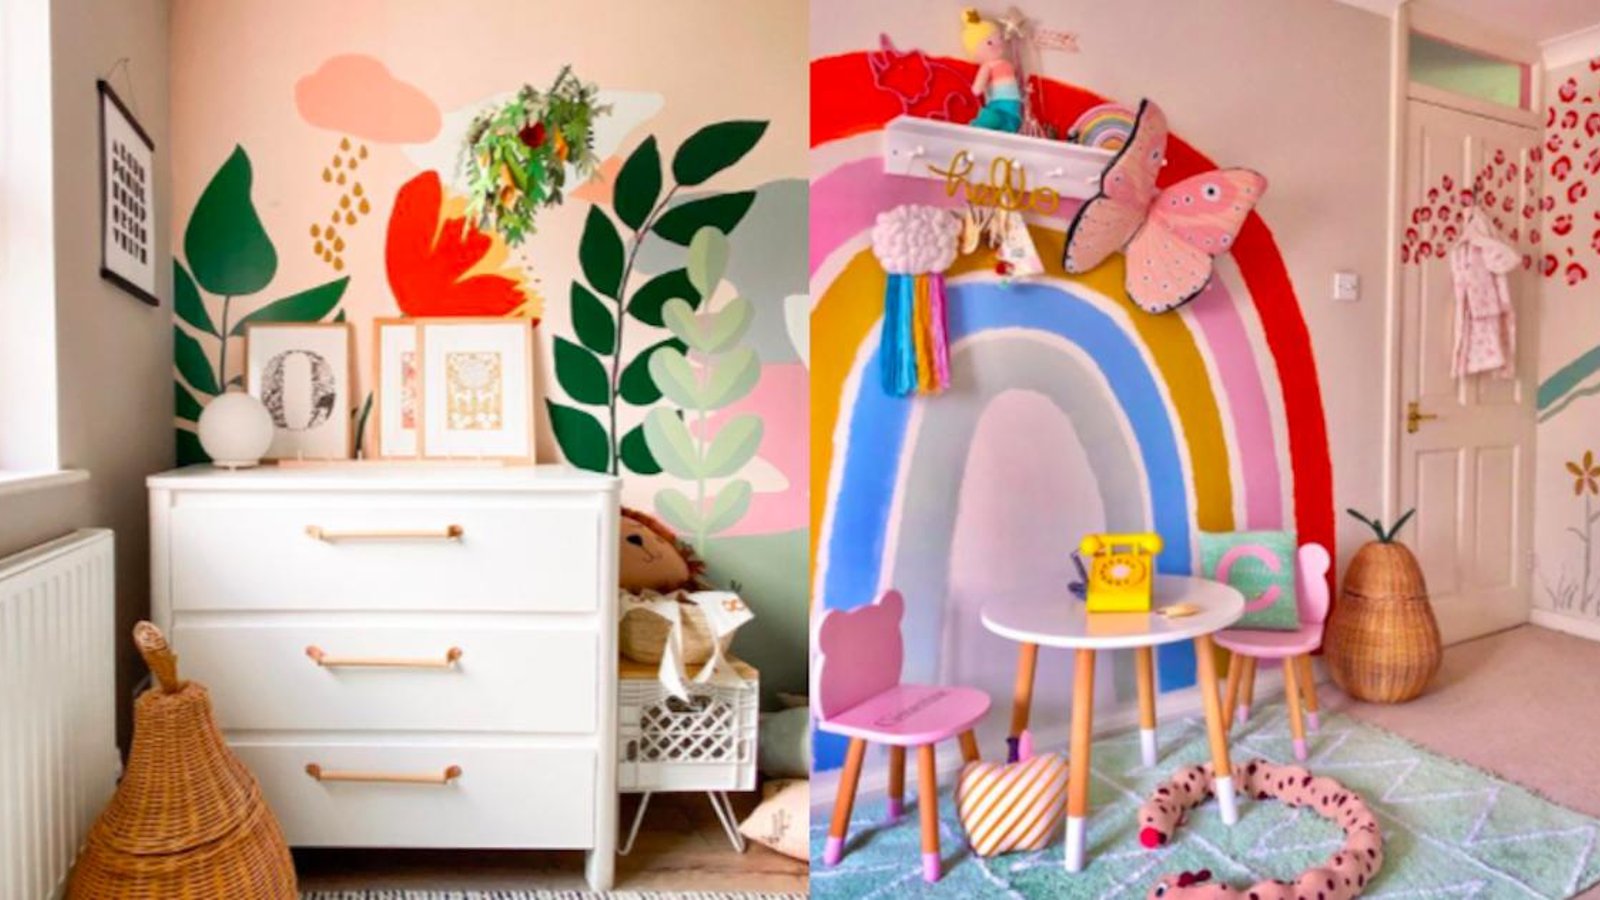 14 façons de décorer une chambre d'enfant facilement, avec de la peinture